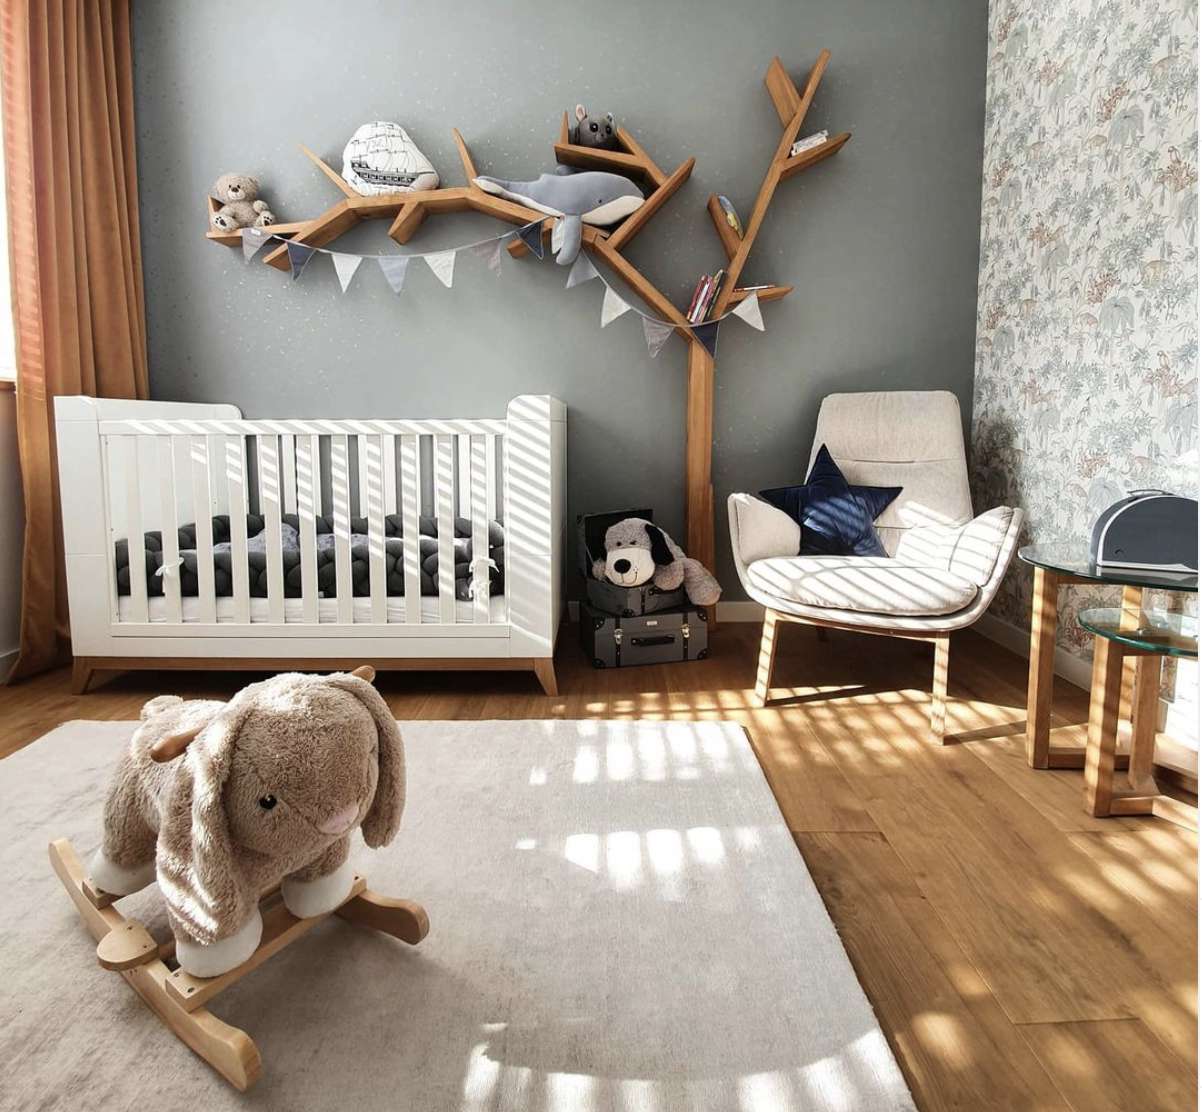 Kinderzimmer mit Regal in Form eines Baumes, graue Wände, Stuhl in der Ecke, weißes Kinderbett